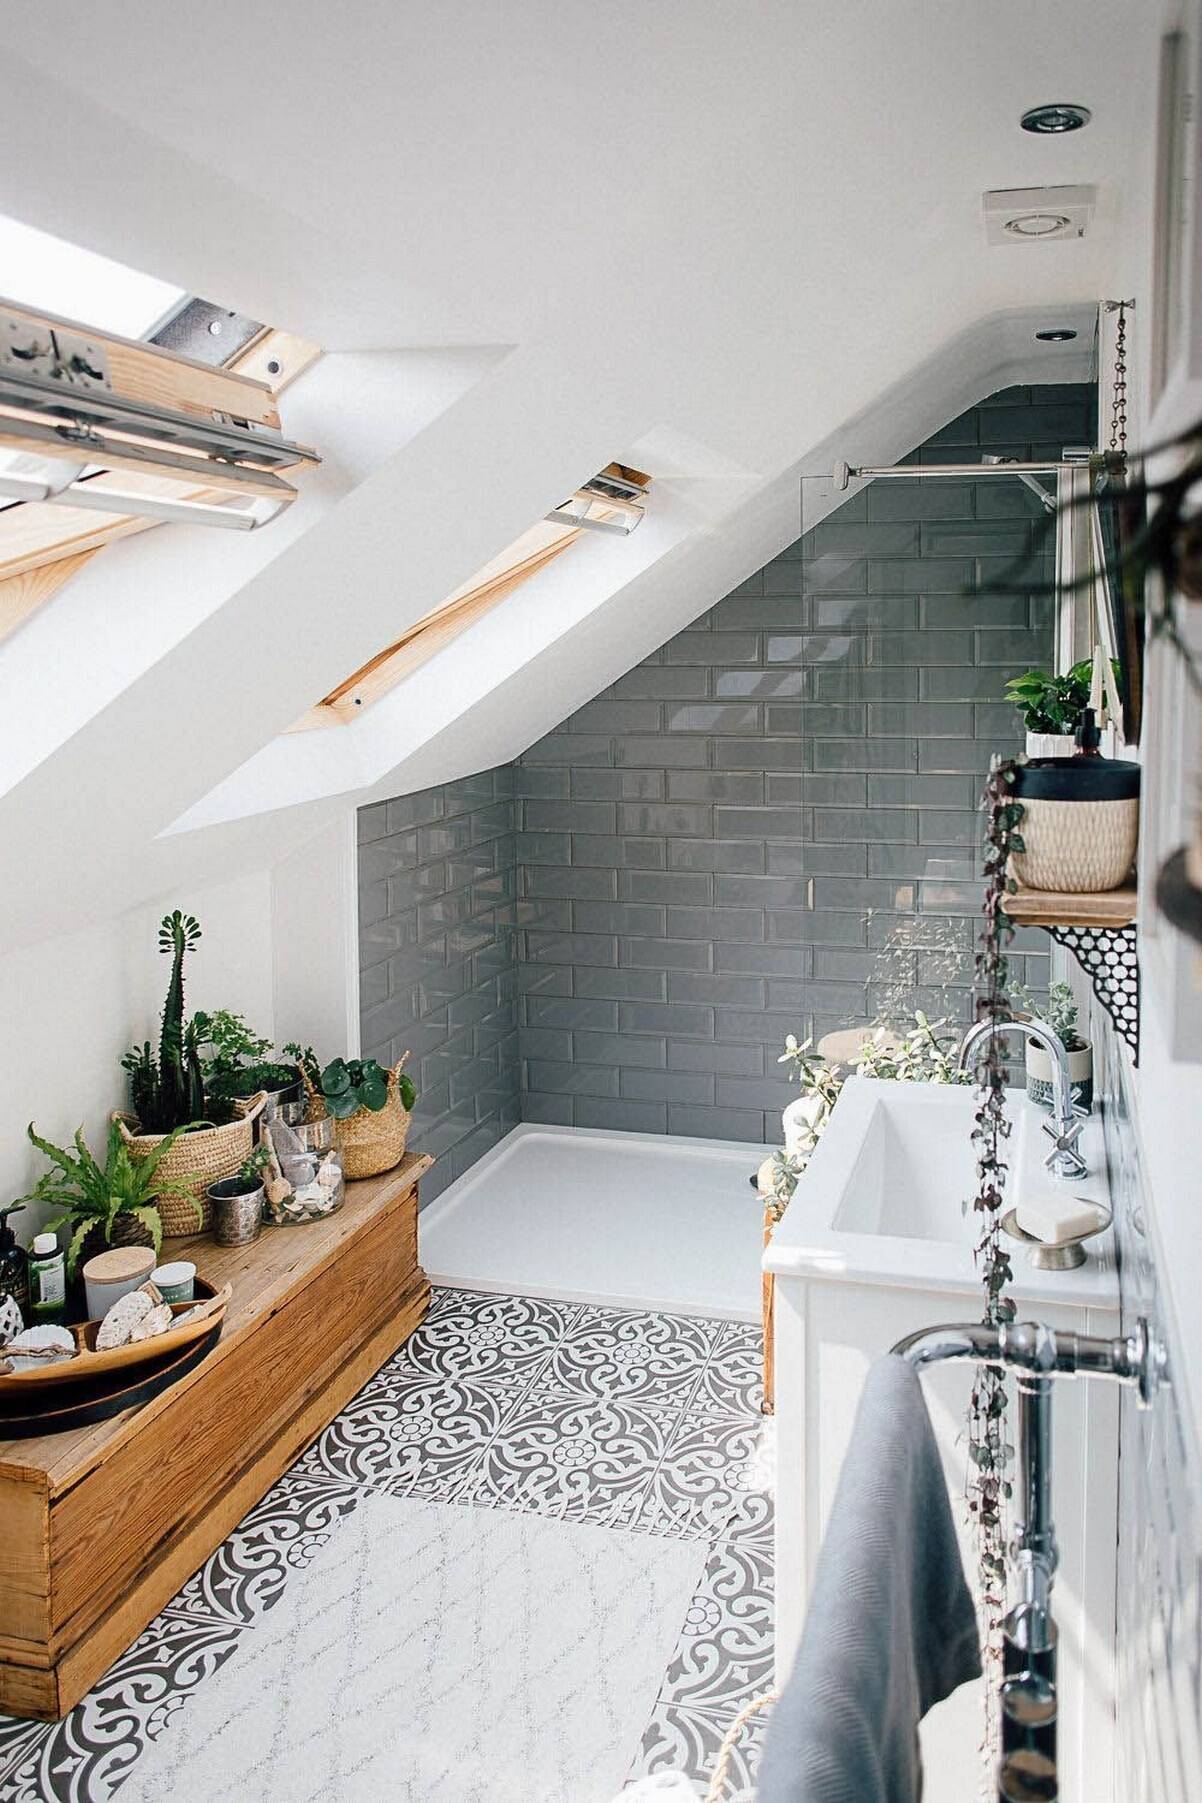 Hãy nhớ rằng nếu bạn có một không gian tầng áp mái diện tích nhỏ thì phong cách tối giản, Scandinavian hoặc đương đại sẽ là những phong cách tốt nhất vì chúng giúp phòng tắm trông rộng rãi hơn.